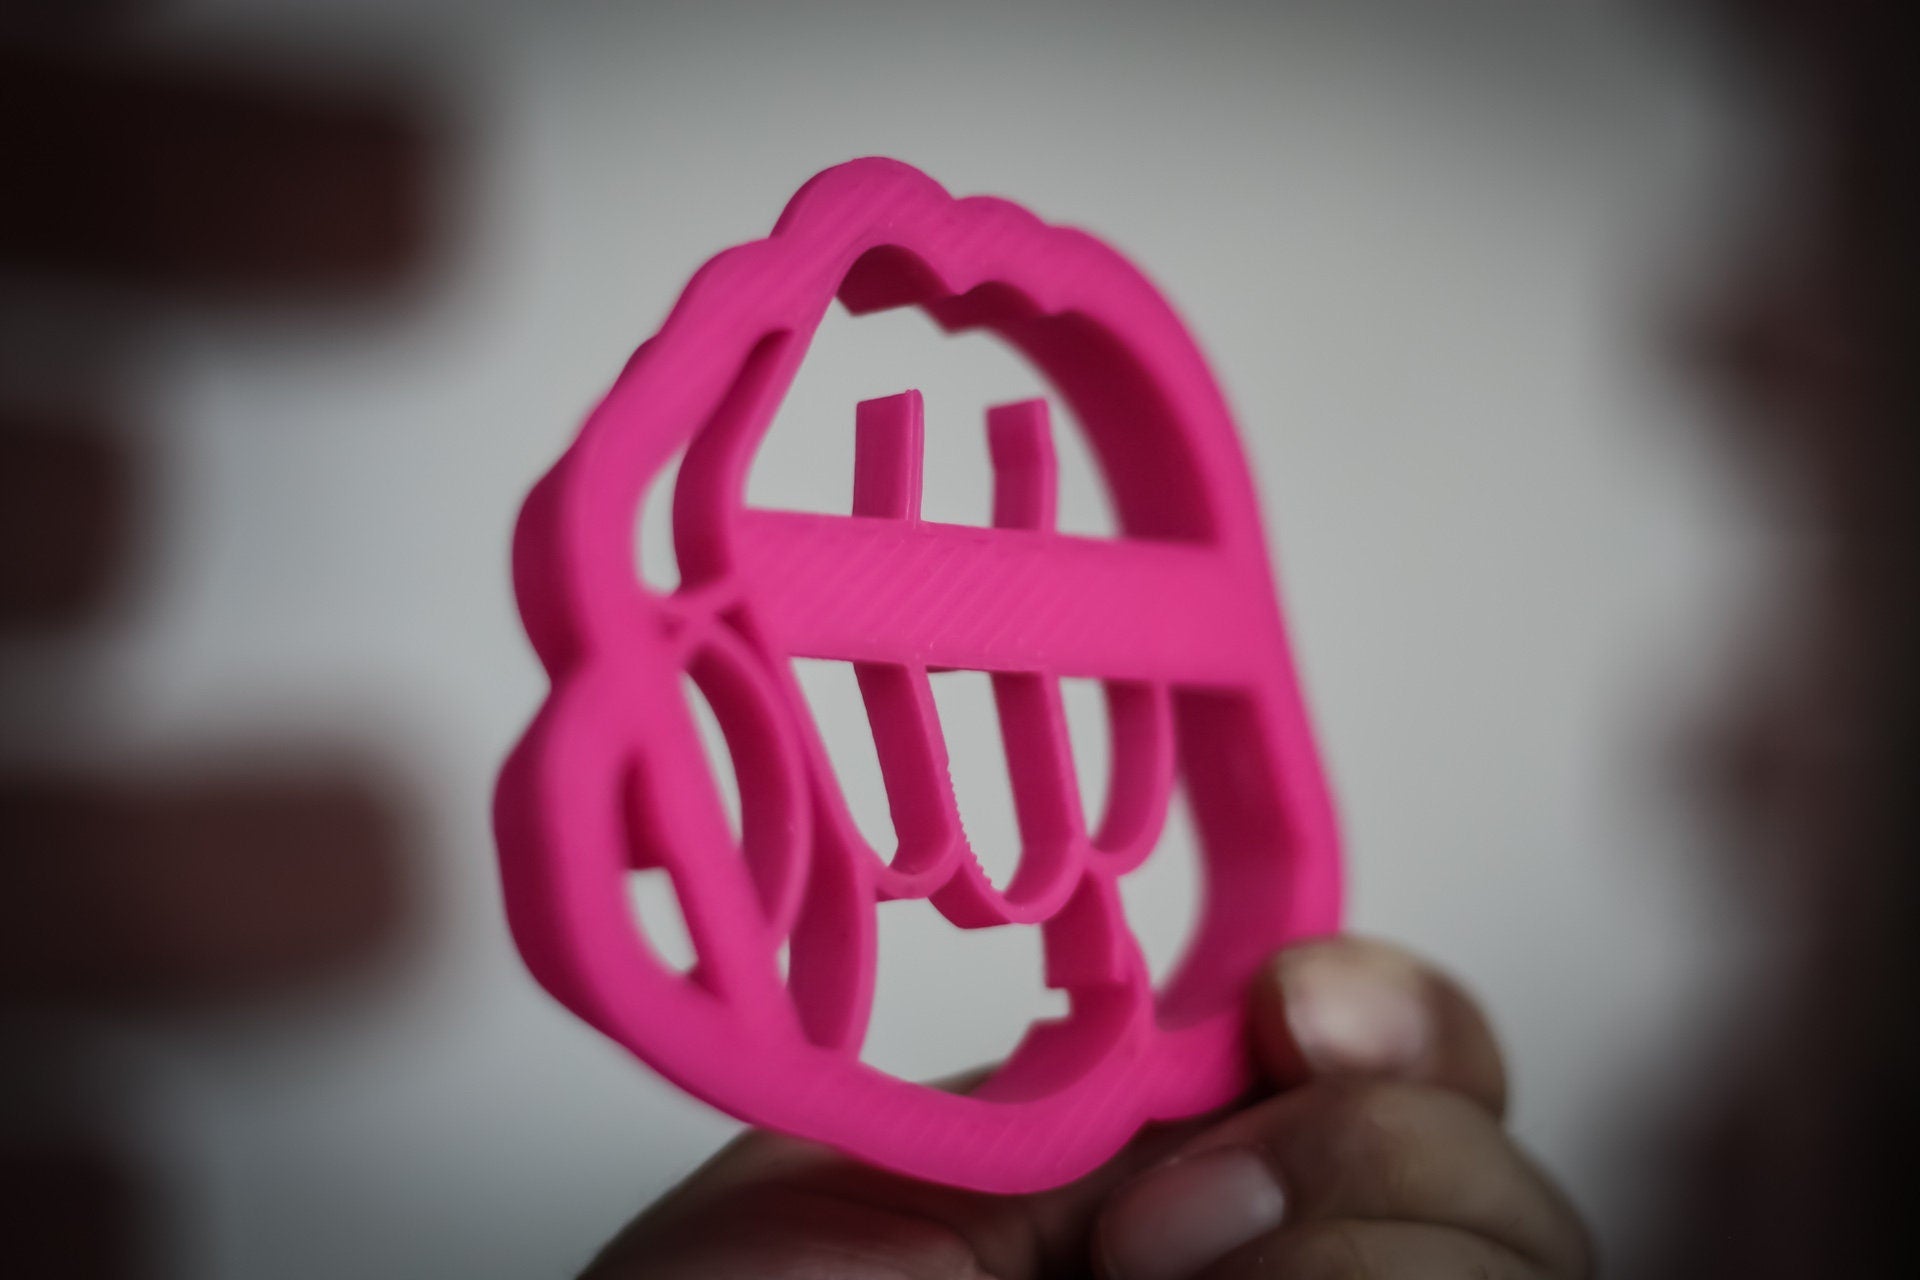 Fist Cookie Cutter | 3d Fun cookie cutters baking accessories | cookie mold baking supplies - 3DPrintProps